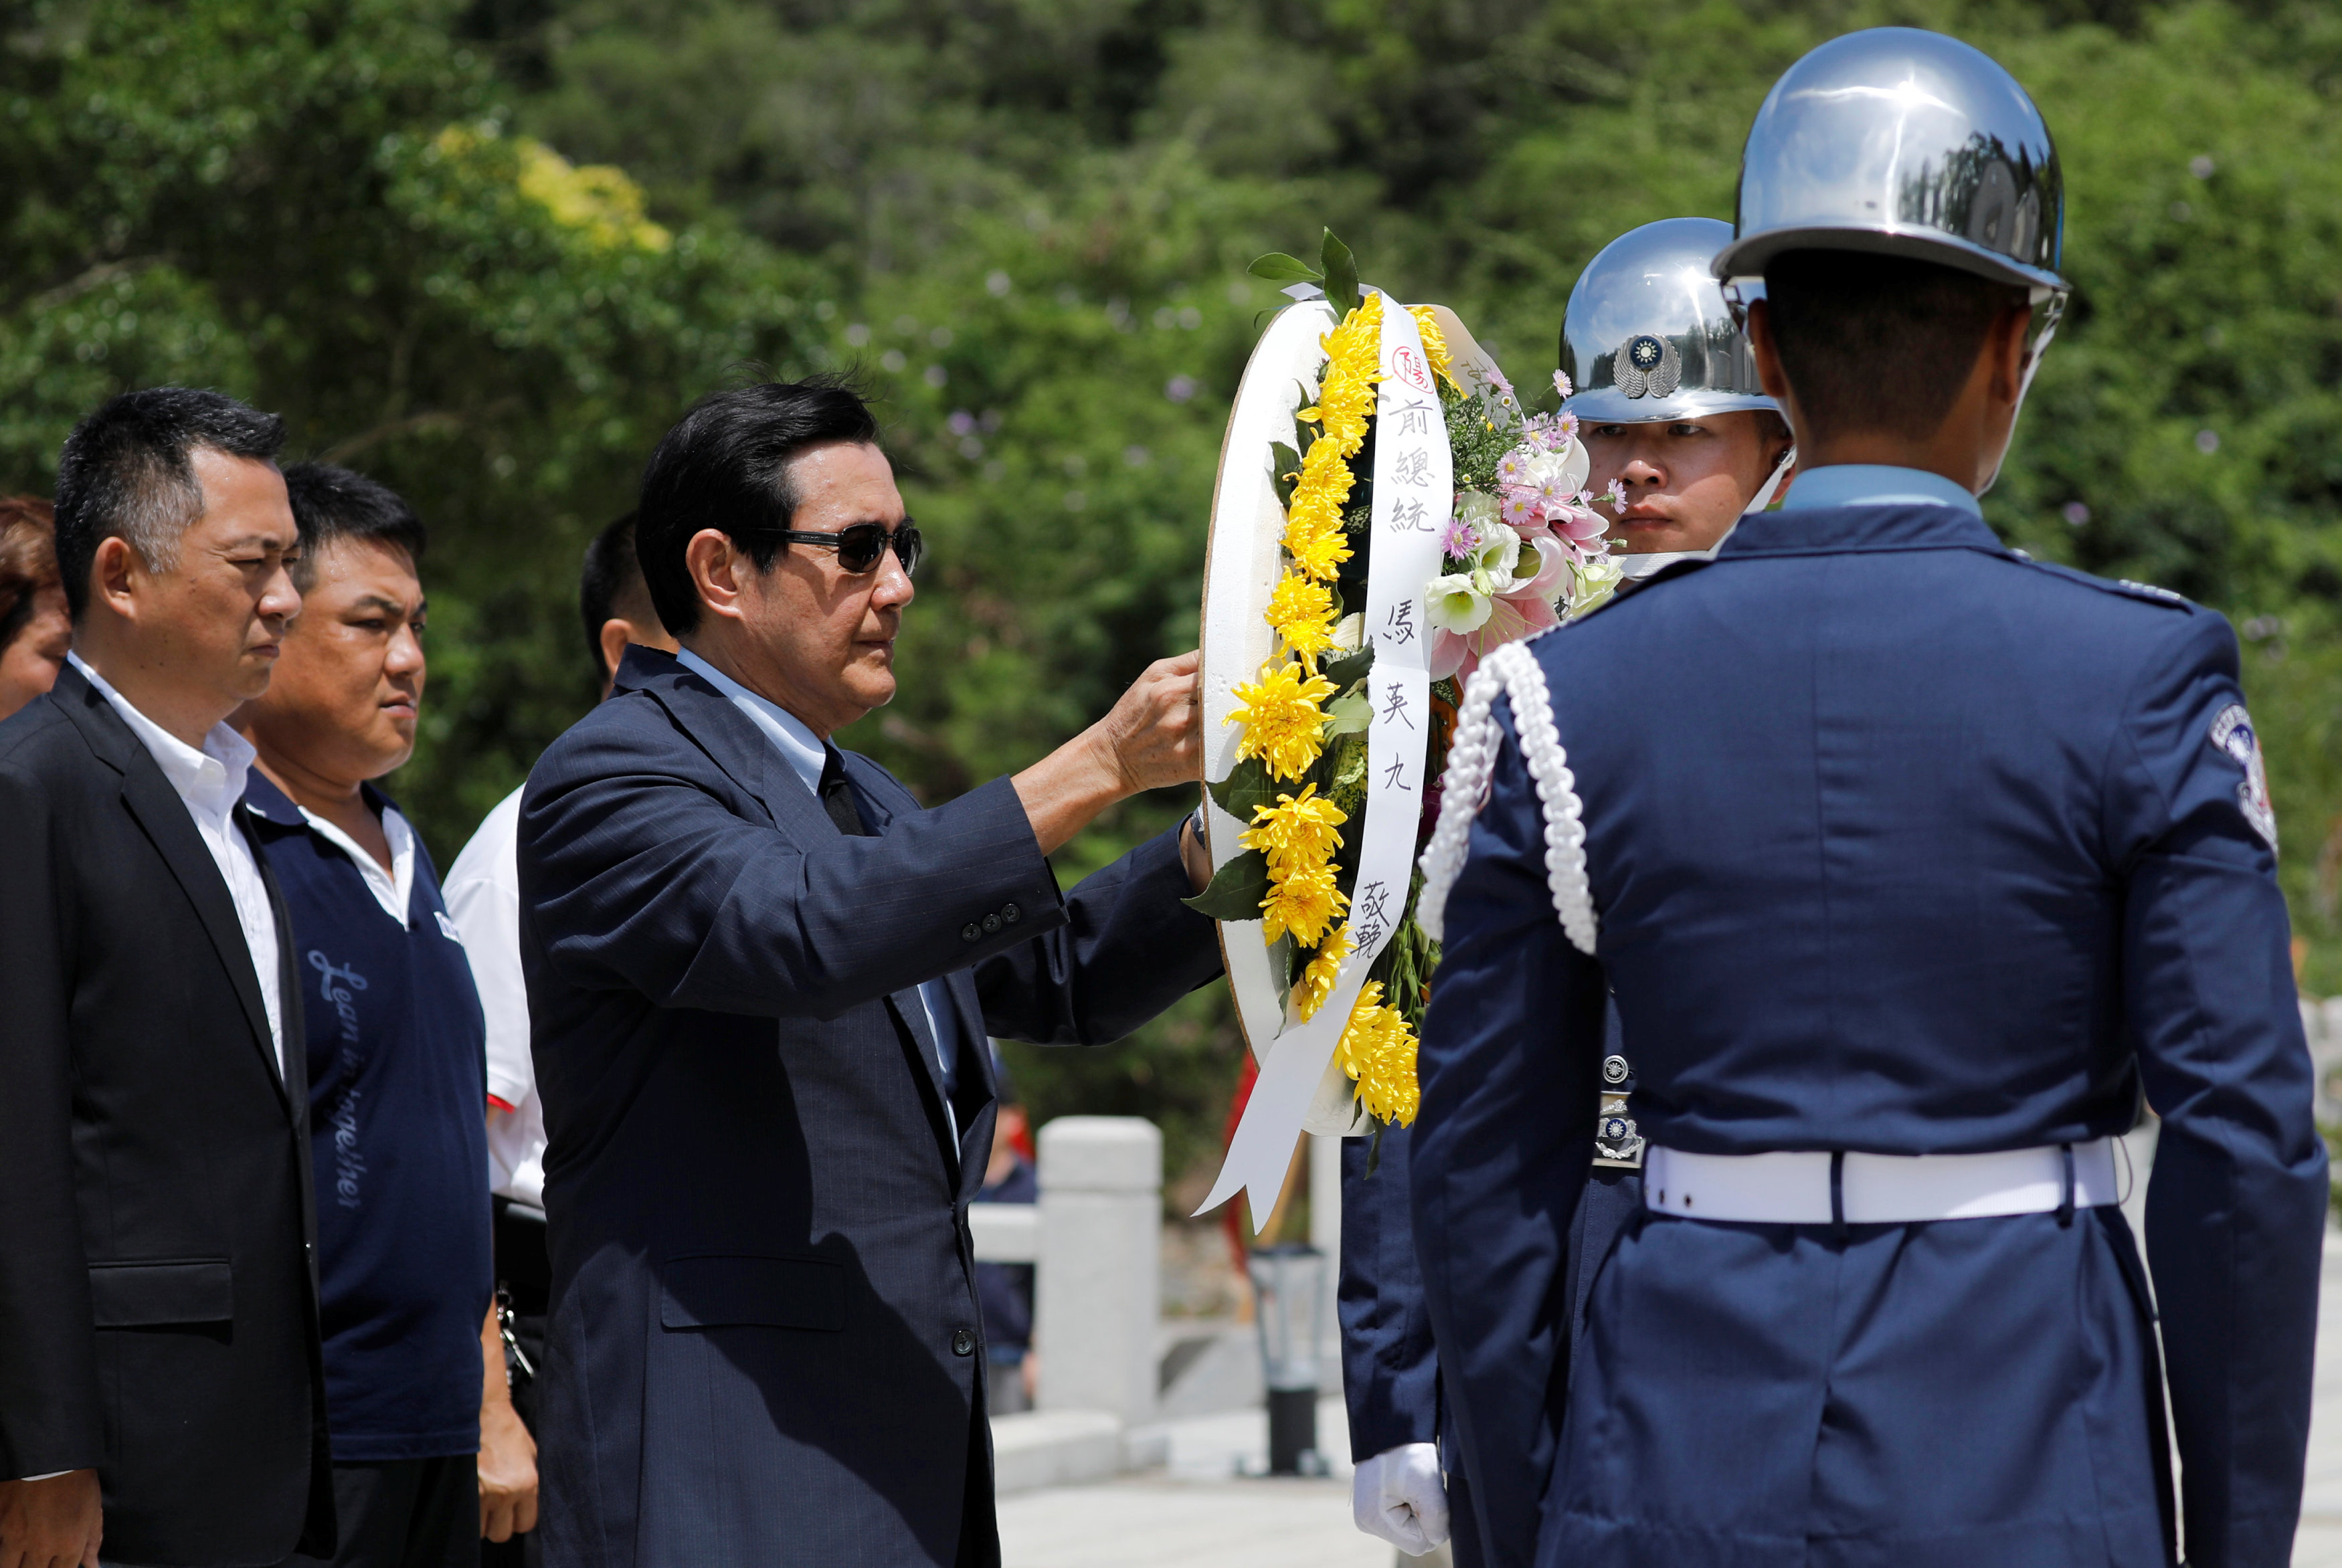  الرئيس التايوانى السابق يحمل إكليلا من الزهور بمناسبة الذكرى الستين لأزمة مضيق تايوان 